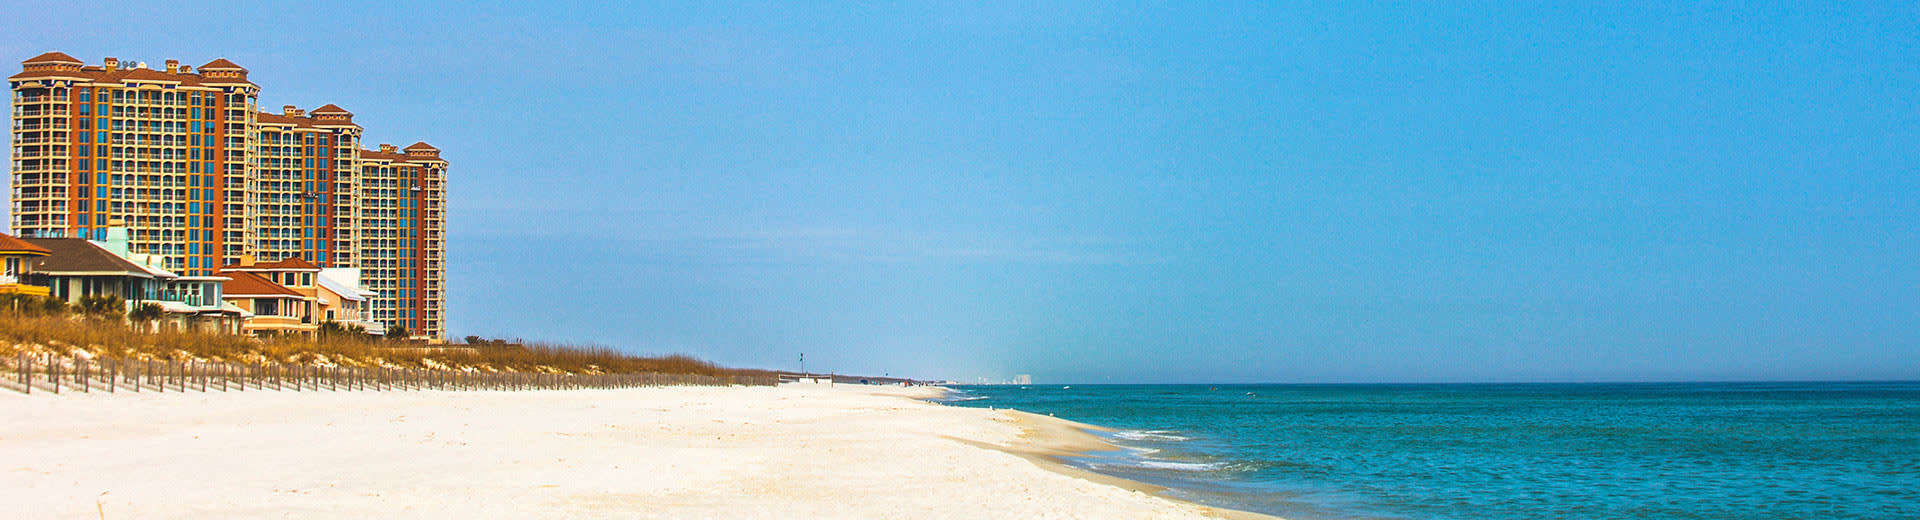 Un hotel frente al mar en la playa de Pensacola mira sobre arena blanca y aguas azules.